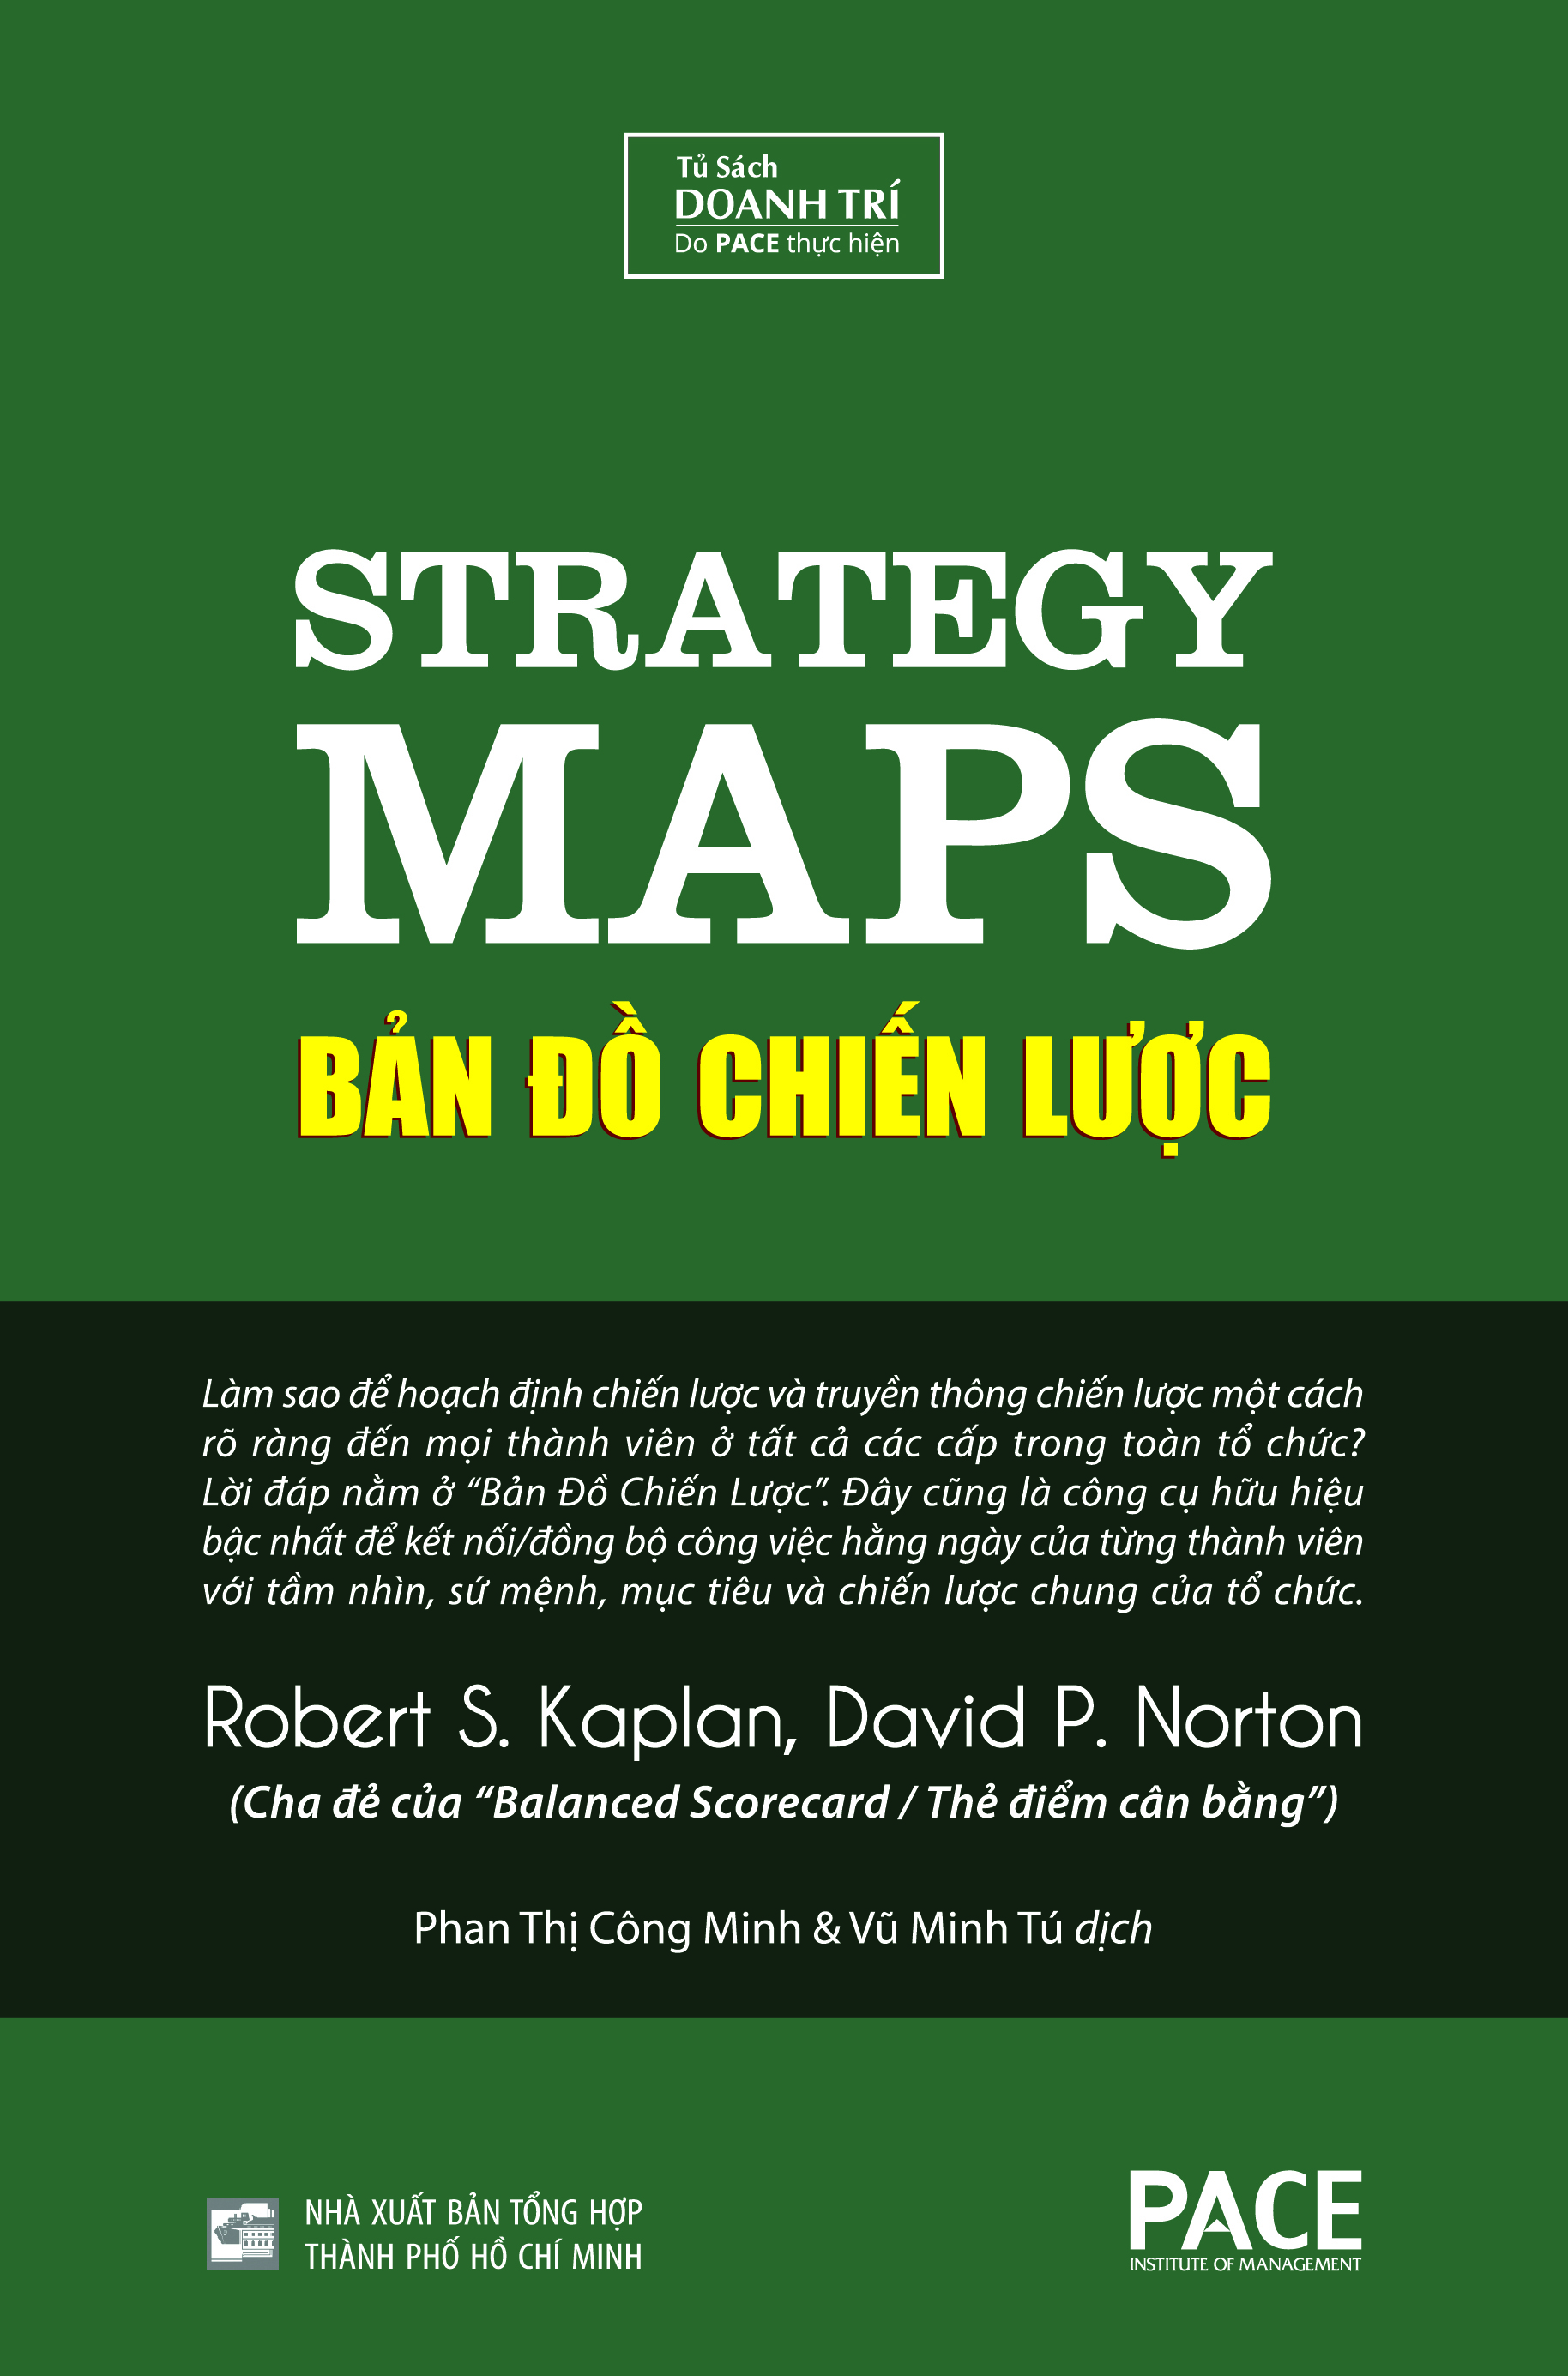 BẢN ĐỒ CHIẾN LƯỢC (Strategy Maps) - Robert S. Kaplan, David P. Norton - Phan Thị Công Minh và Vũ Minh Tú (dịch) - Tái bản - (bìa cứng)